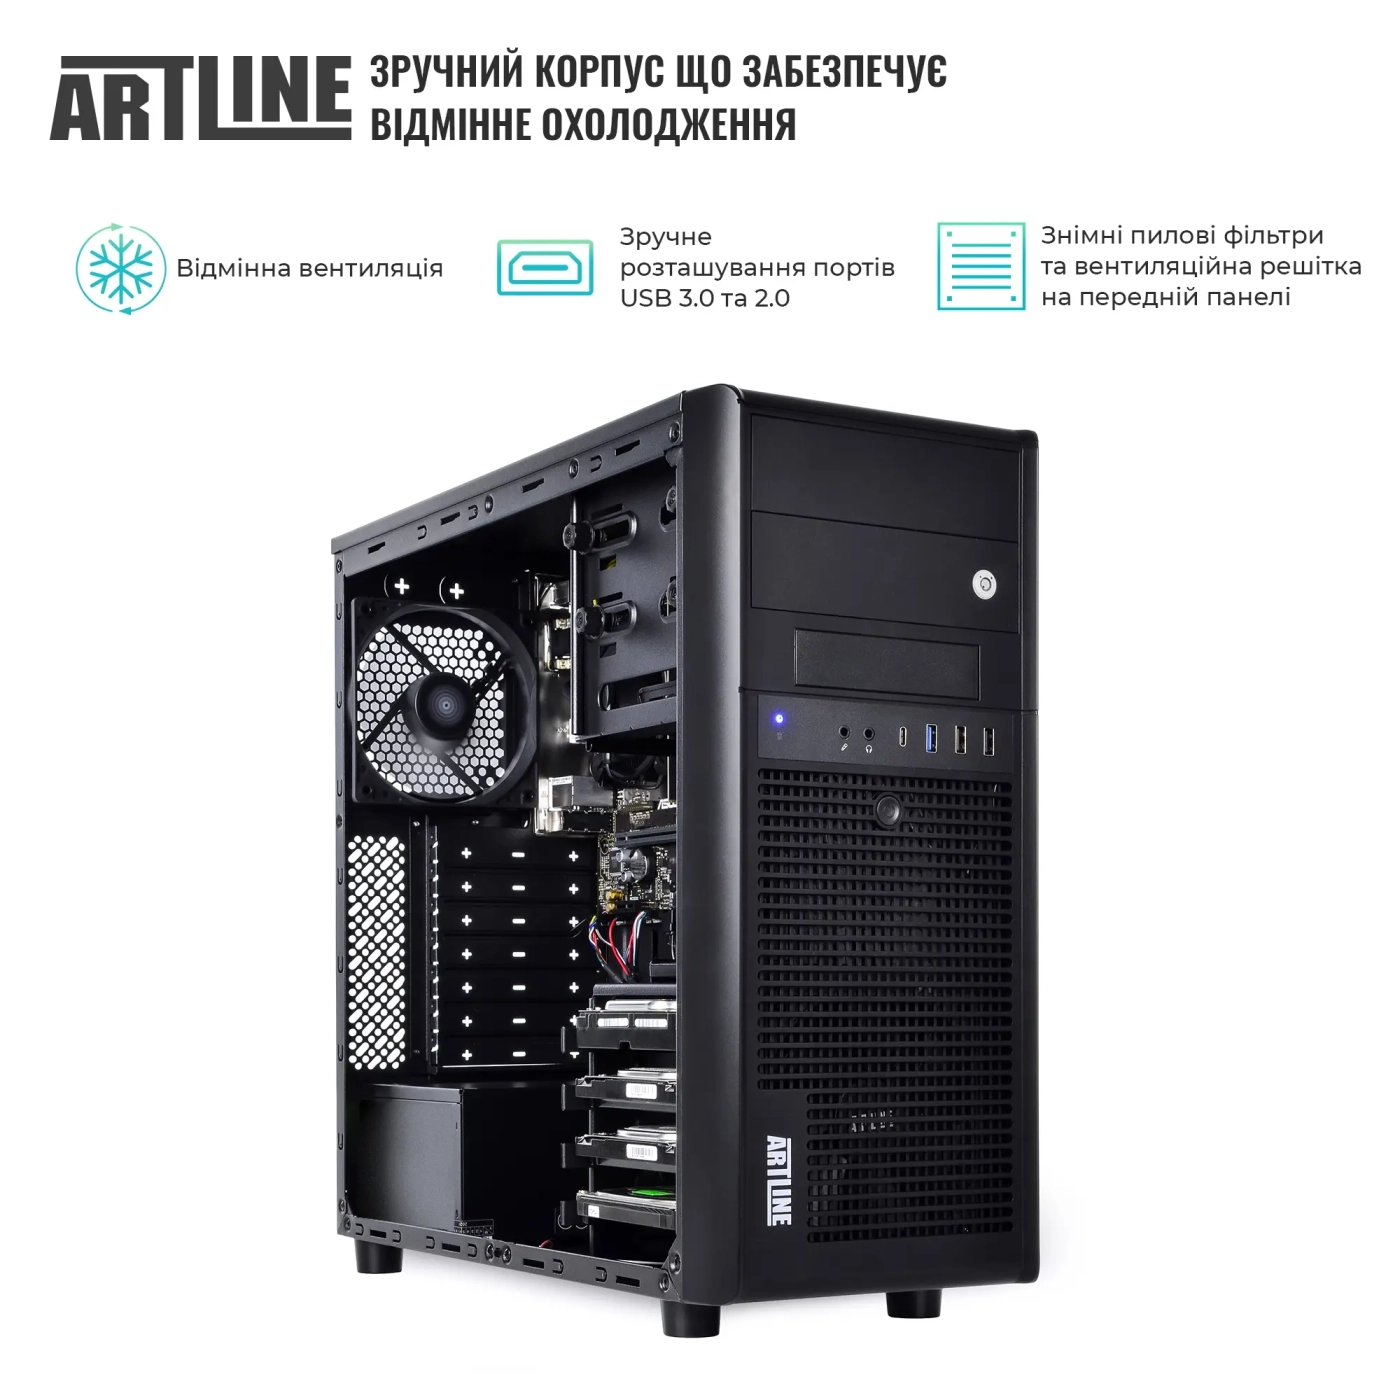 Купить Сервер ARTLINE Business T36 (T36v35) - фото 3